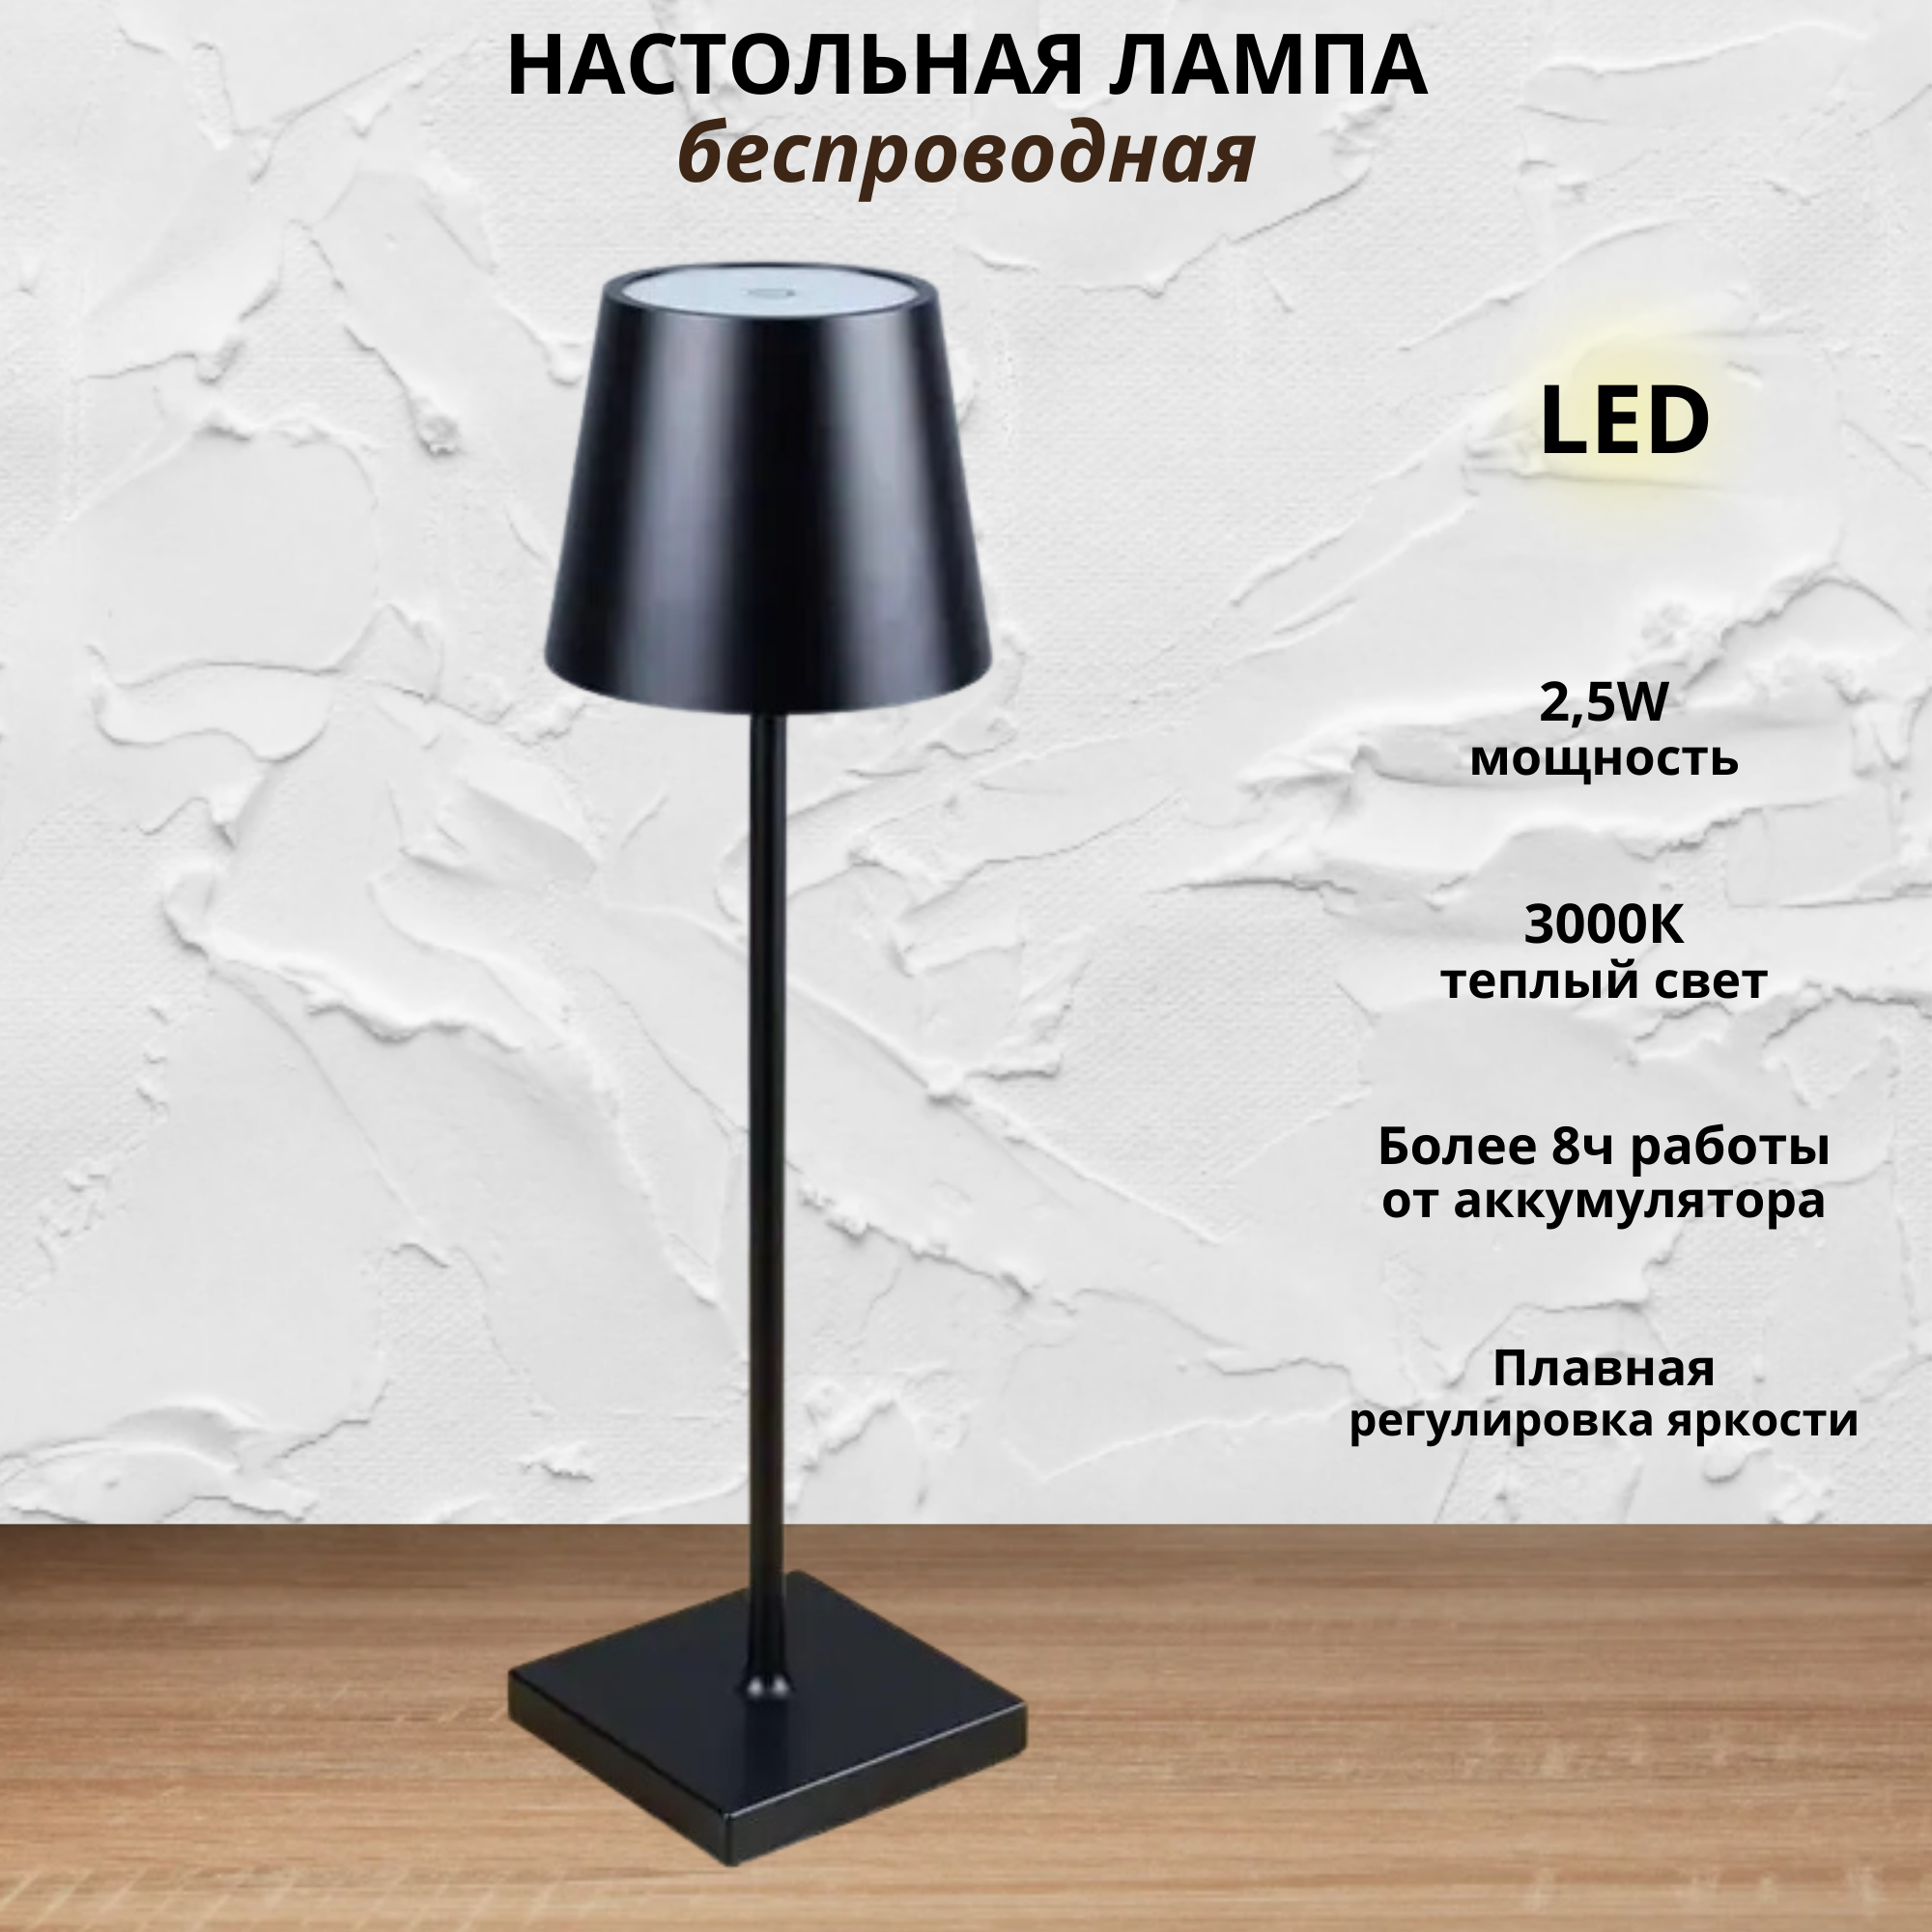 Лампа FEDOTOV настольная беспроводная с гладким абажуром